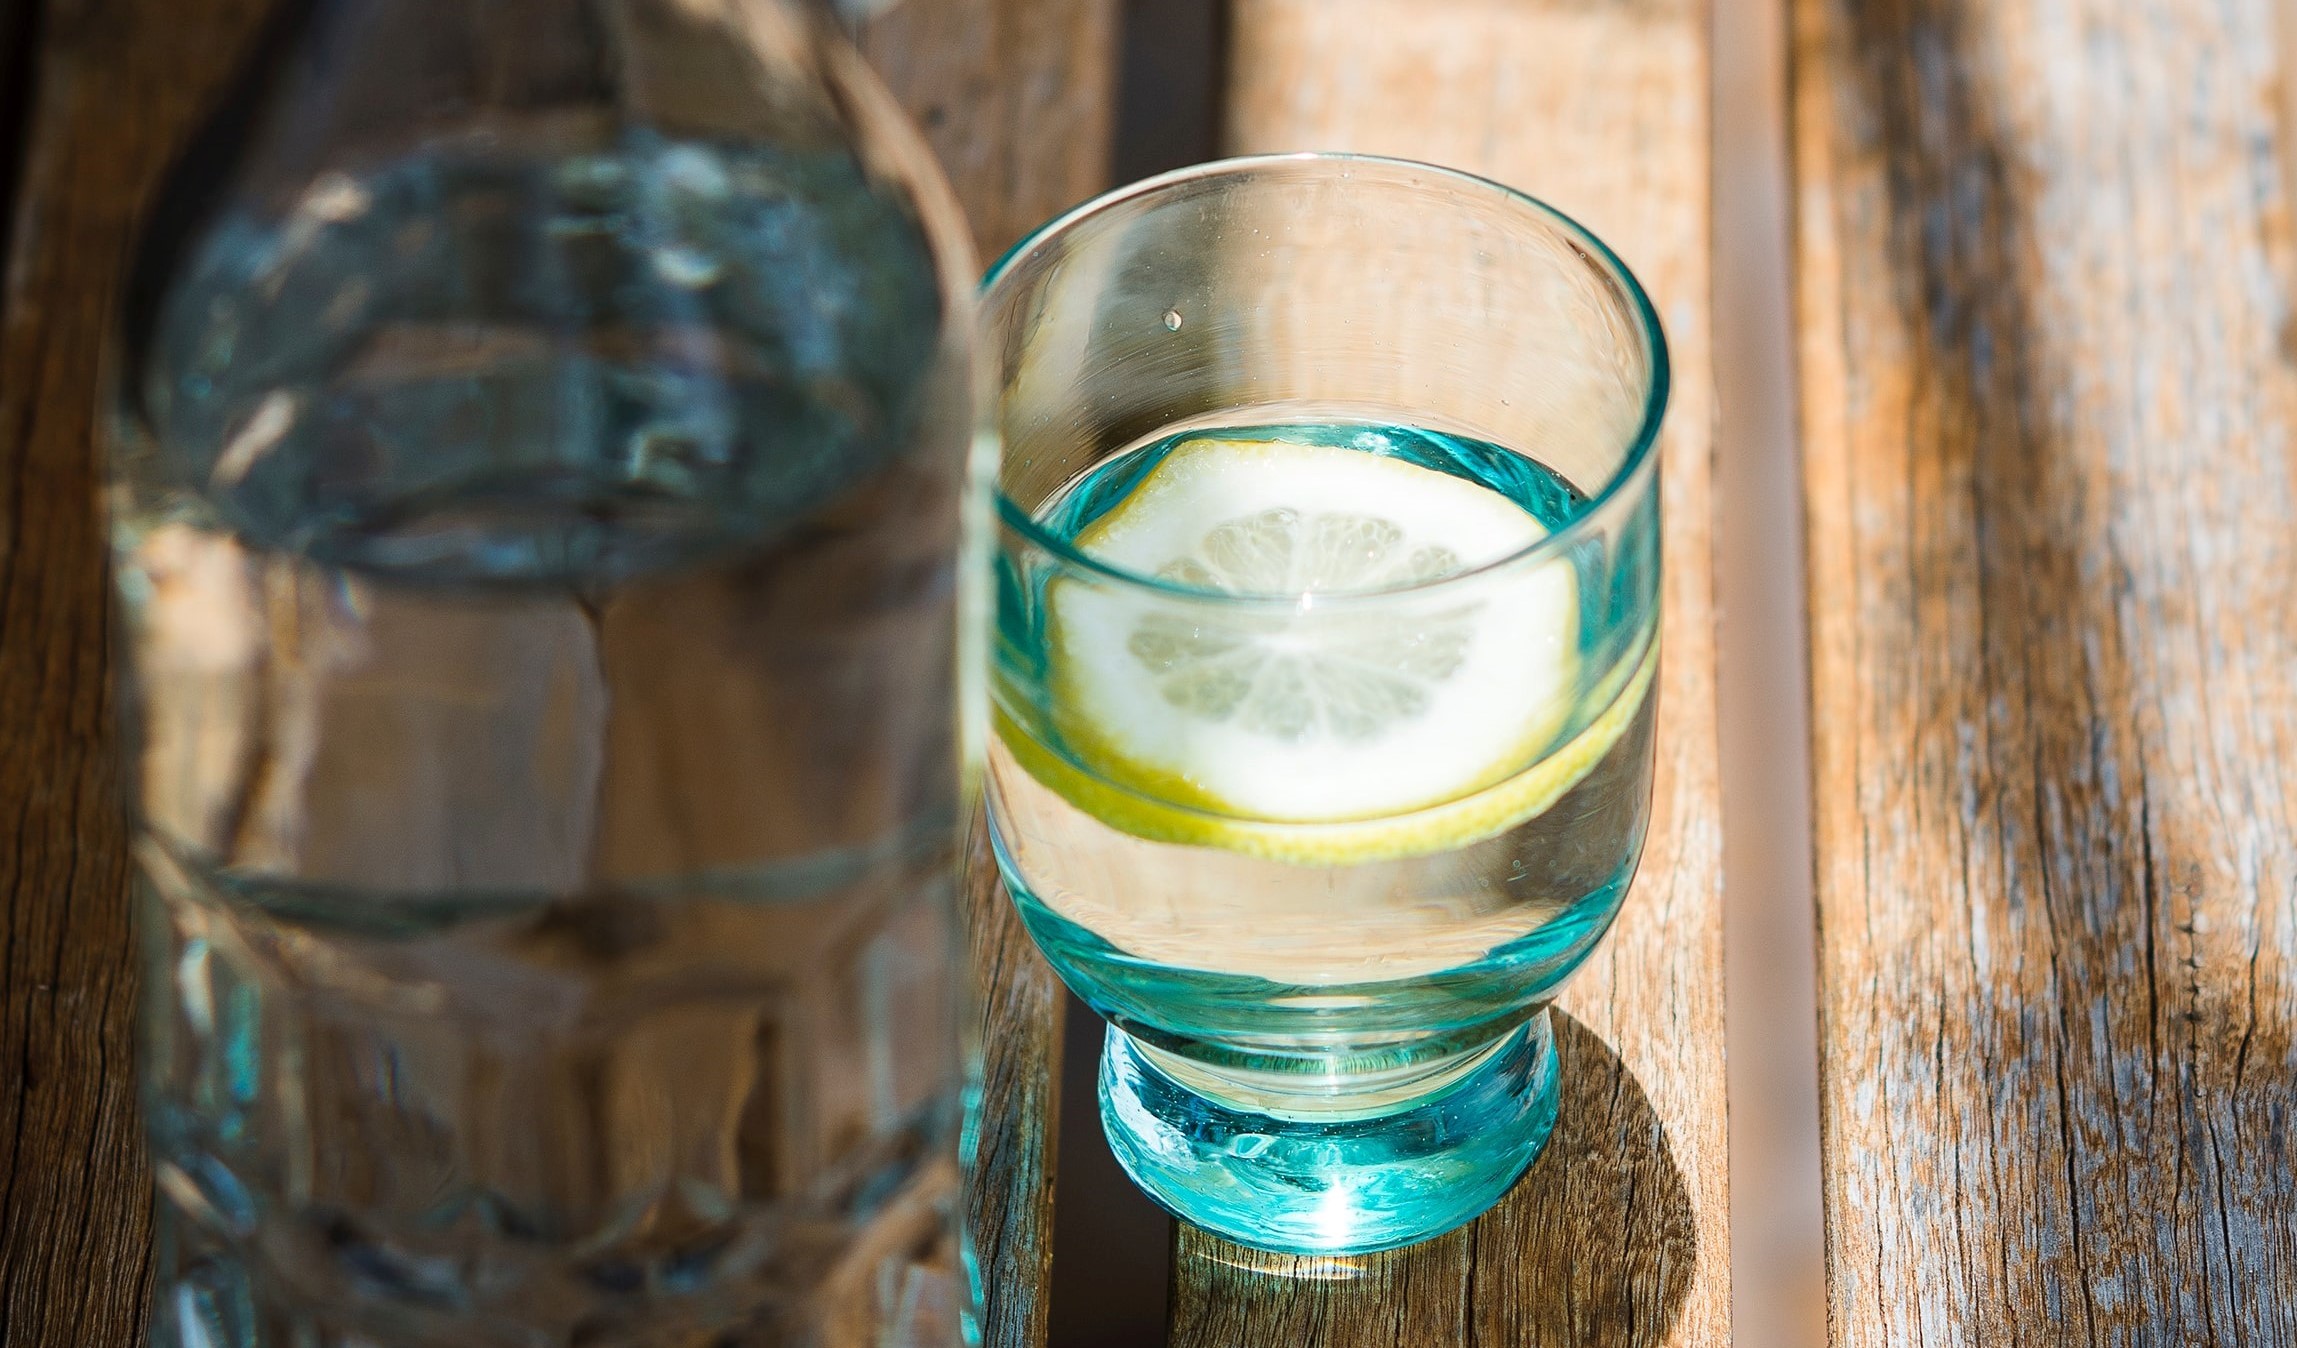 Water lemon type 1 diabetes drink voldoende